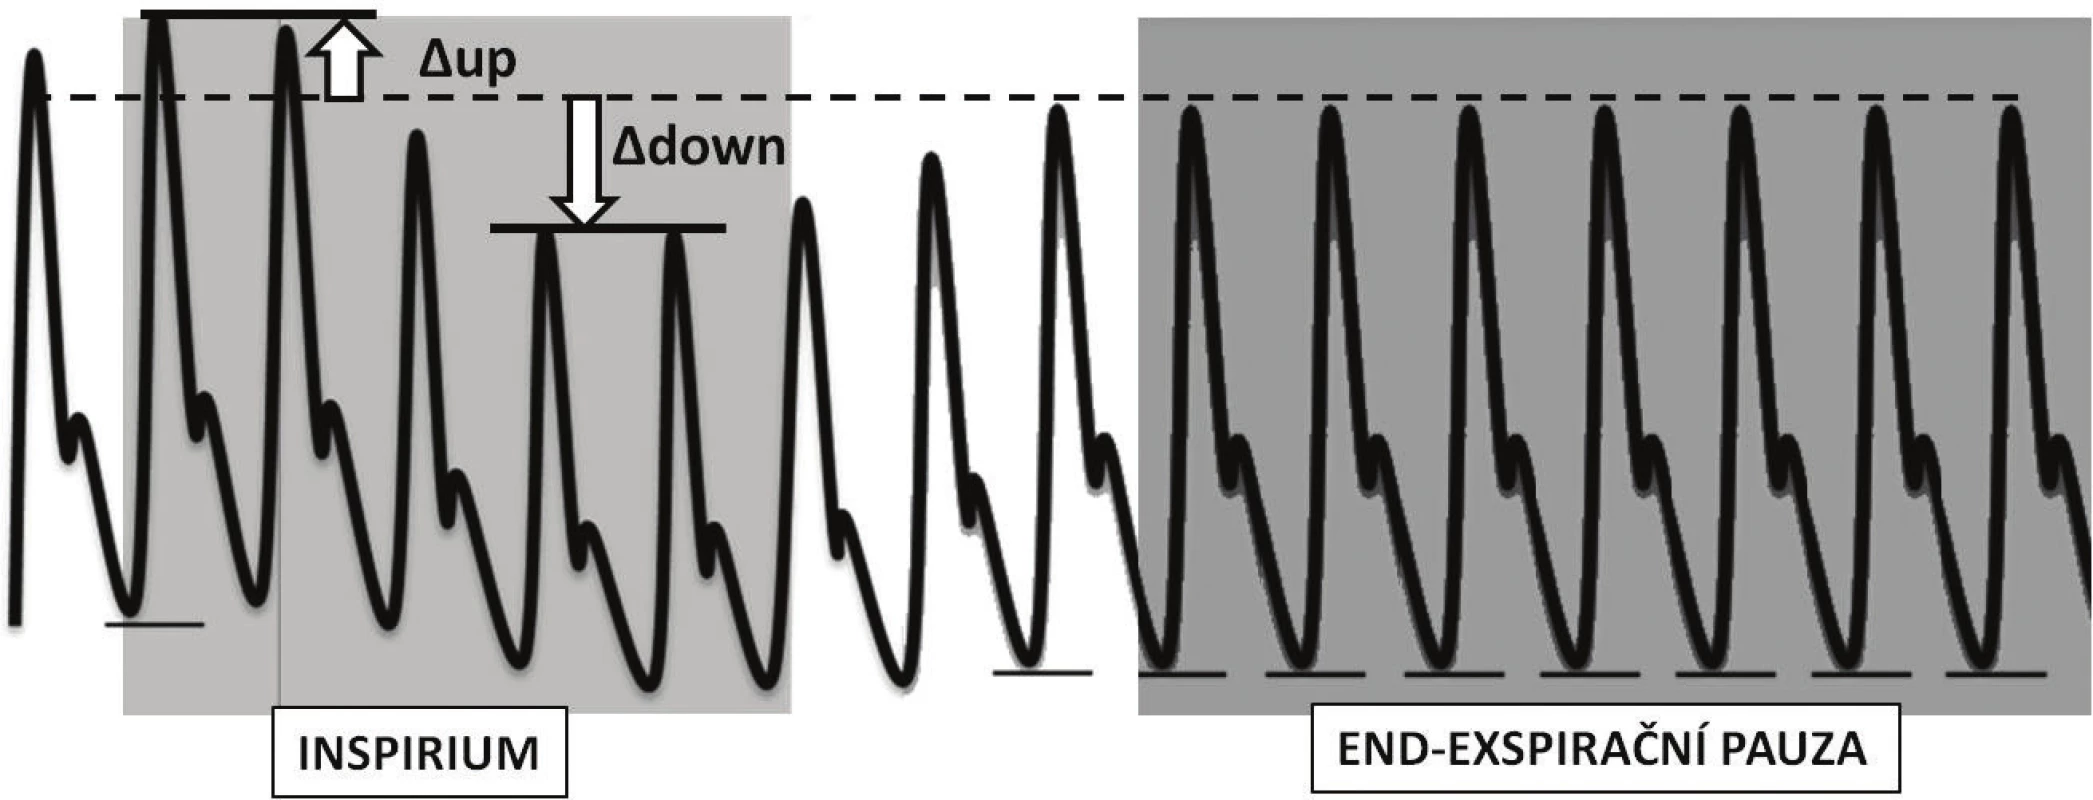 Znázornění změn křivky arteriálního tlaku při ventilaci pozitivním přetlakem a po vřazení krátké endexspirační pauzy